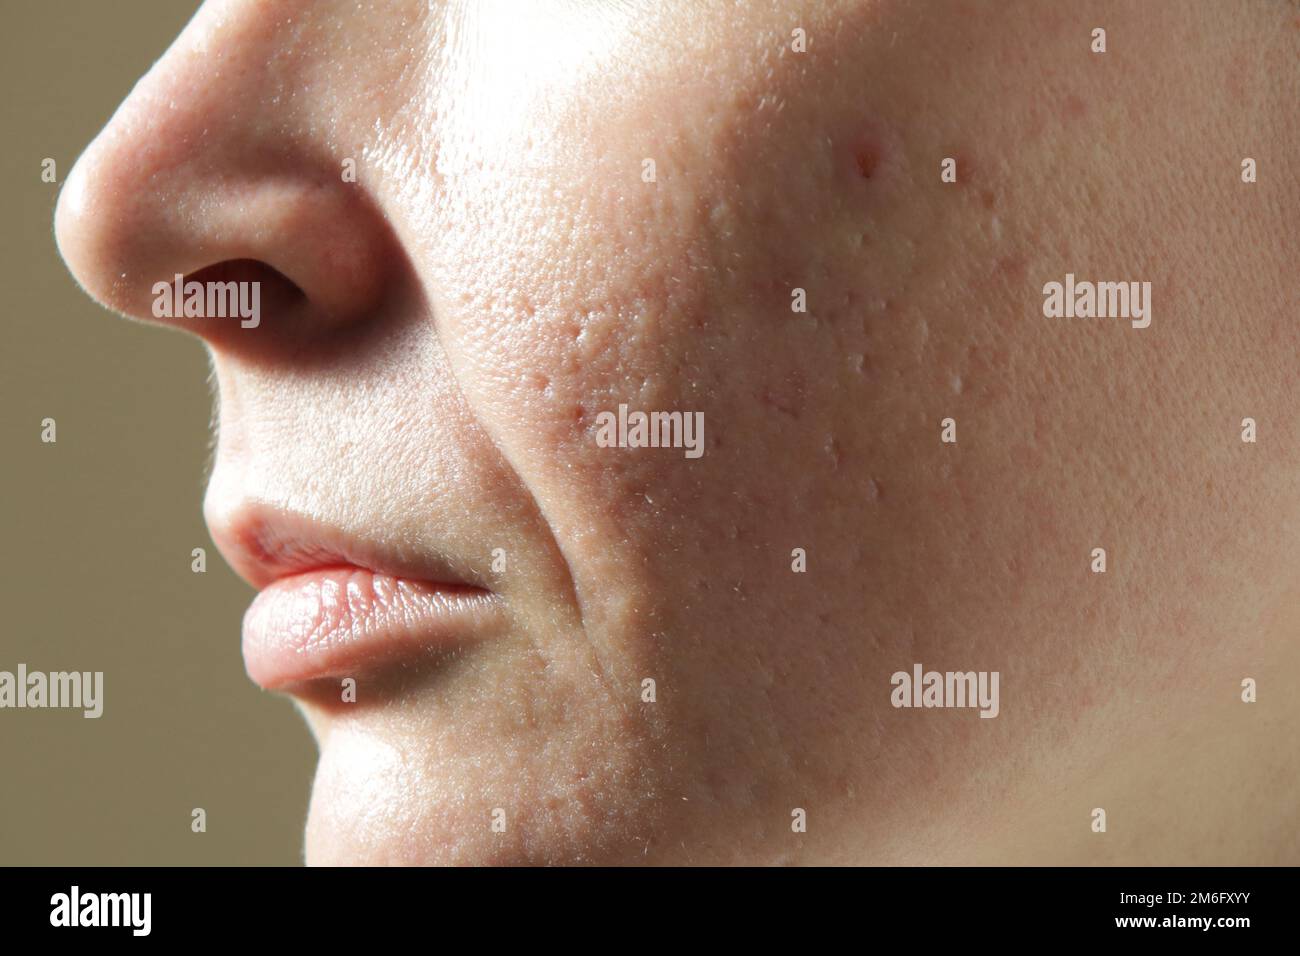 Gesichtsmassage mit Mikroneedle Dermaroller zur Behandlung von Narben, Falten und zur Gesichtsverjüngung. Einfache und billige Hautpflege zu Hause, clos Stockfoto